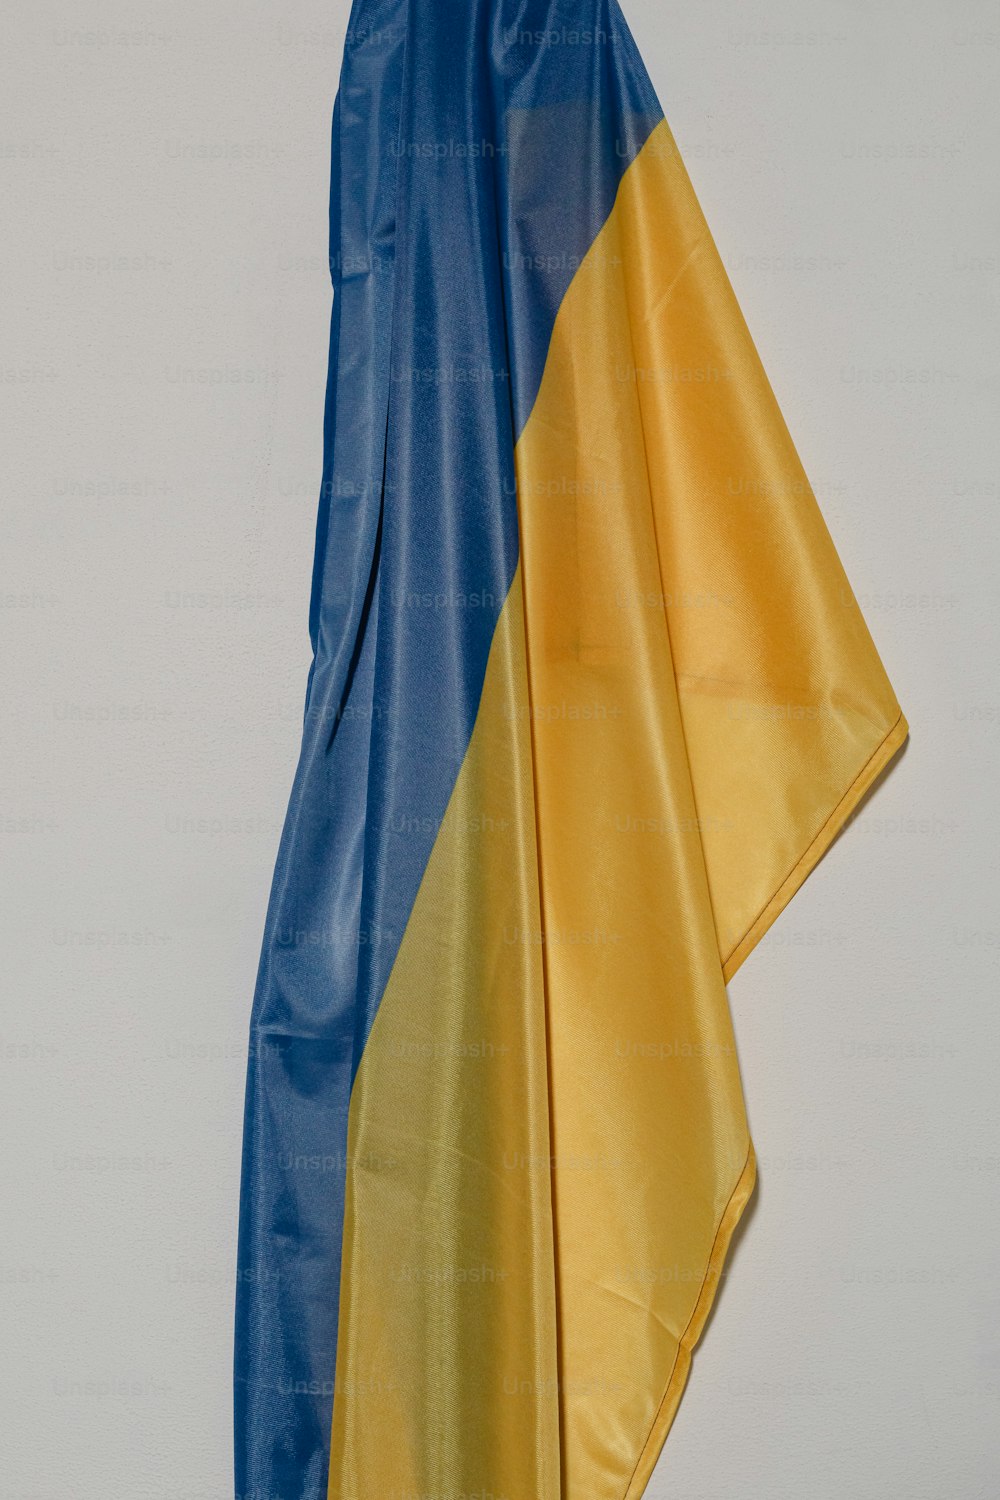 Eine blau-gelbe Flagge hängt an einer Wand